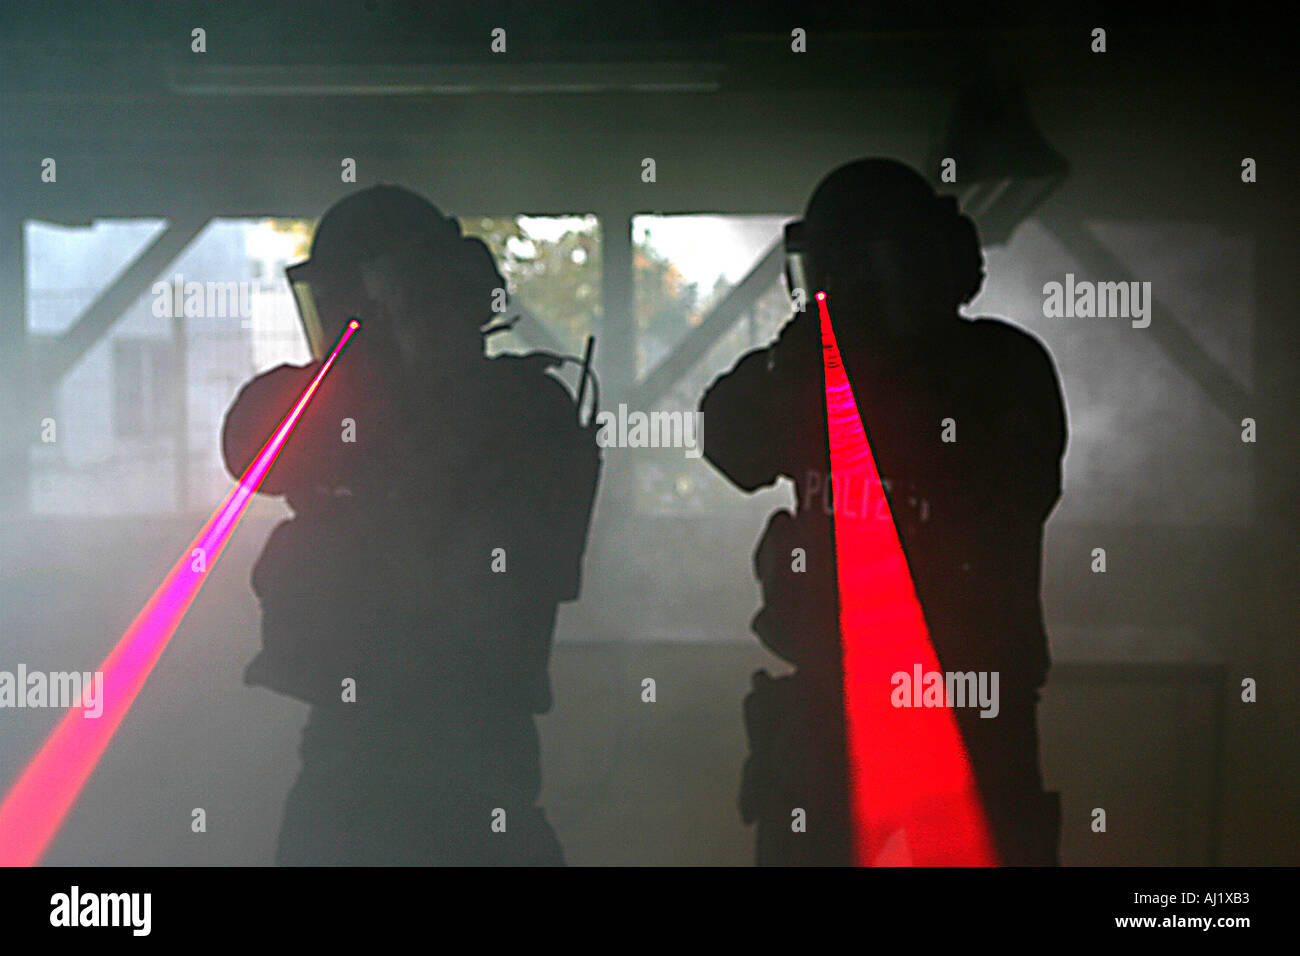 Deutsch zu SWAT-Teams auf einen schießen Reihe Pistolen mit Laser-pointer  Stockfotografie - Alamy